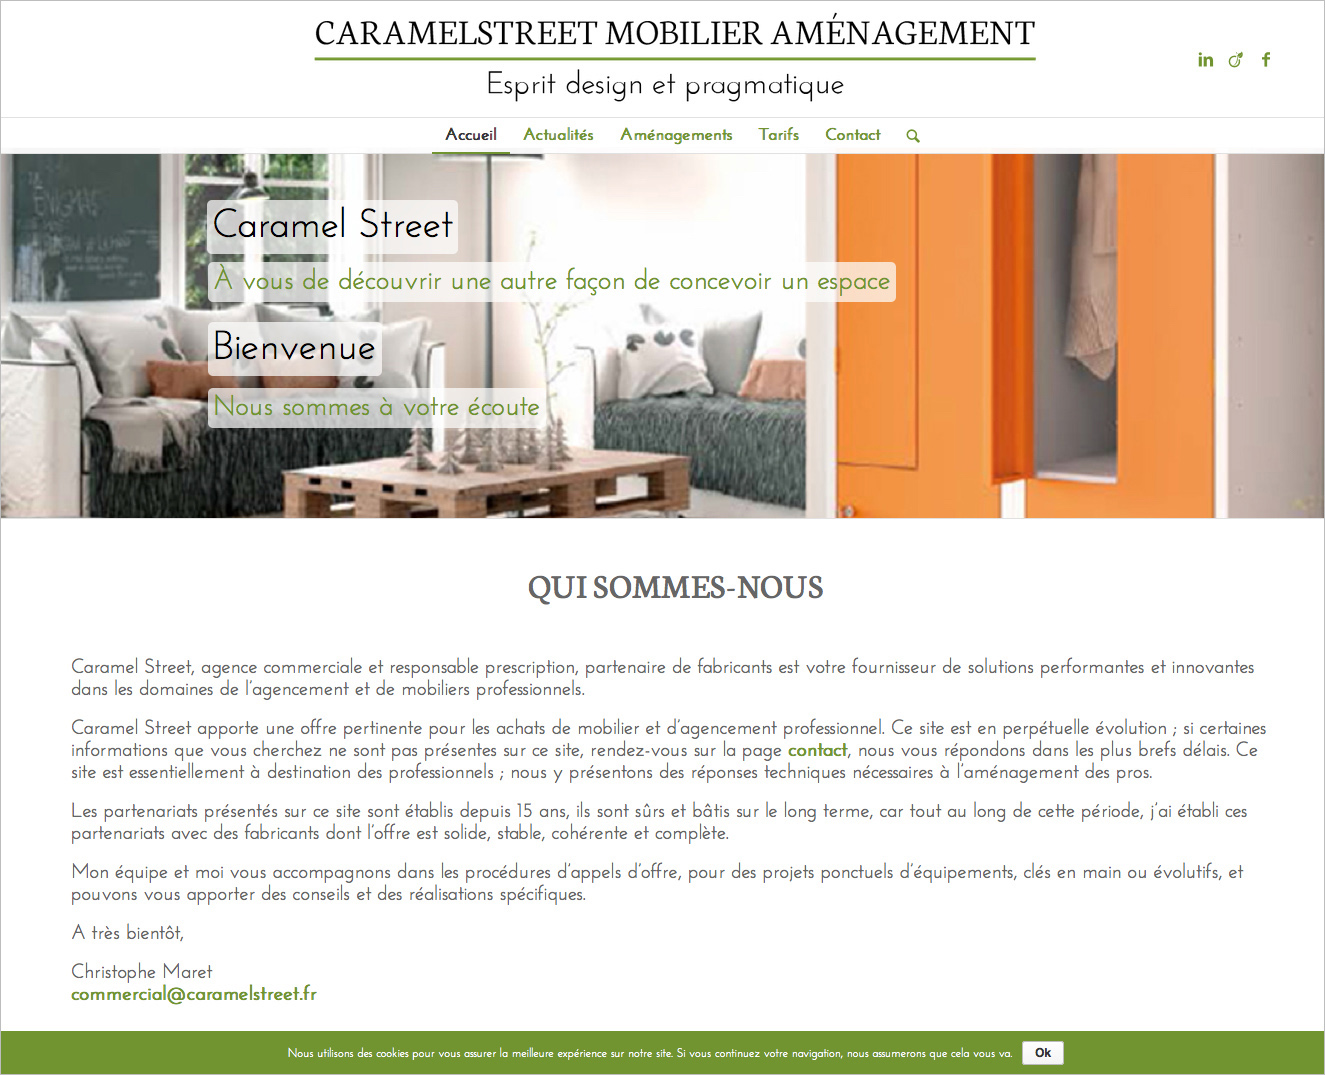 Image du site web réalisé par Nostromo, agence de communication, pour Caramel Street